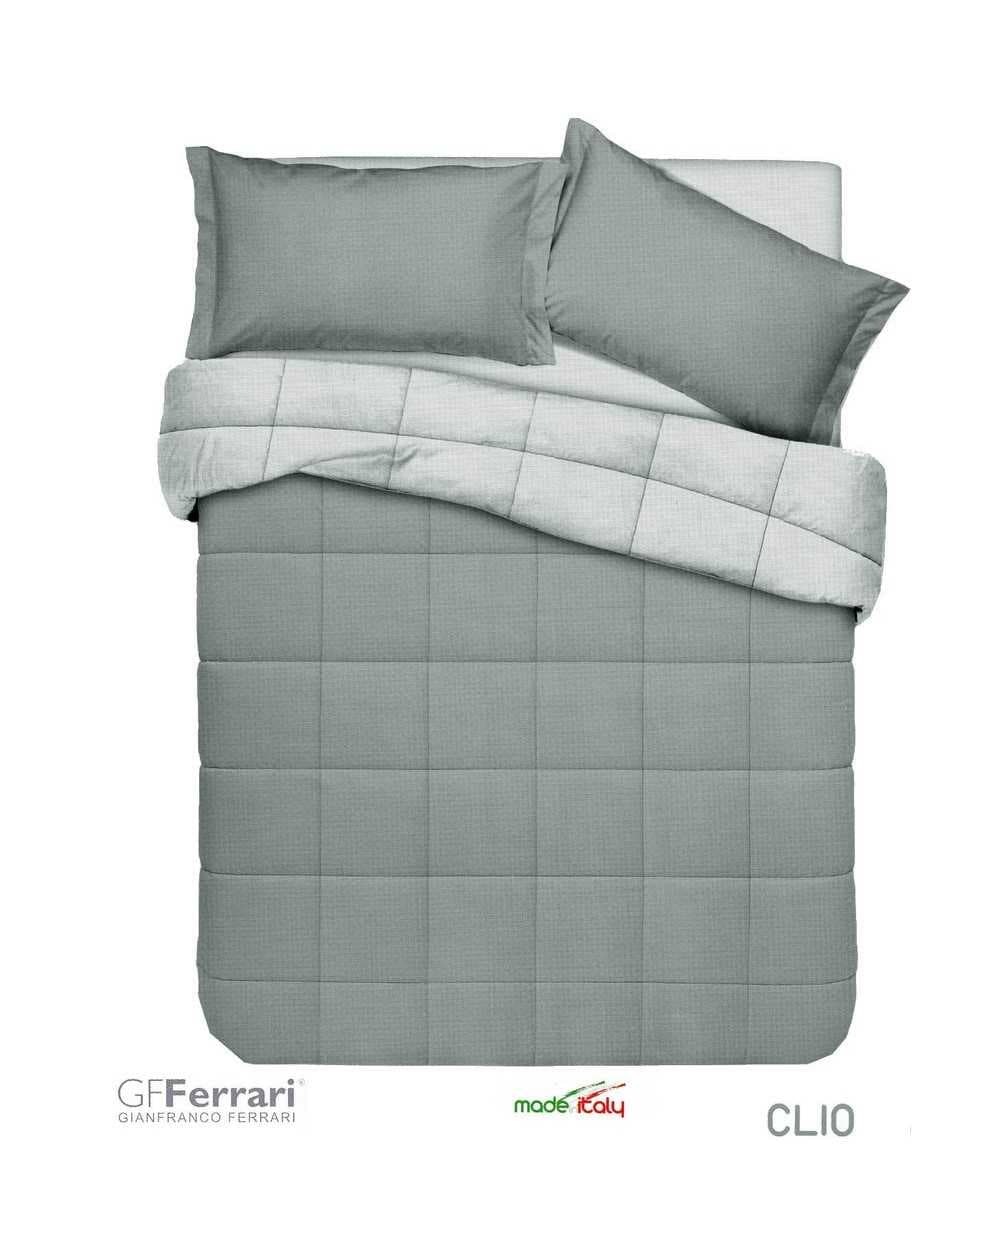 Comforter Clio GF Ferrari